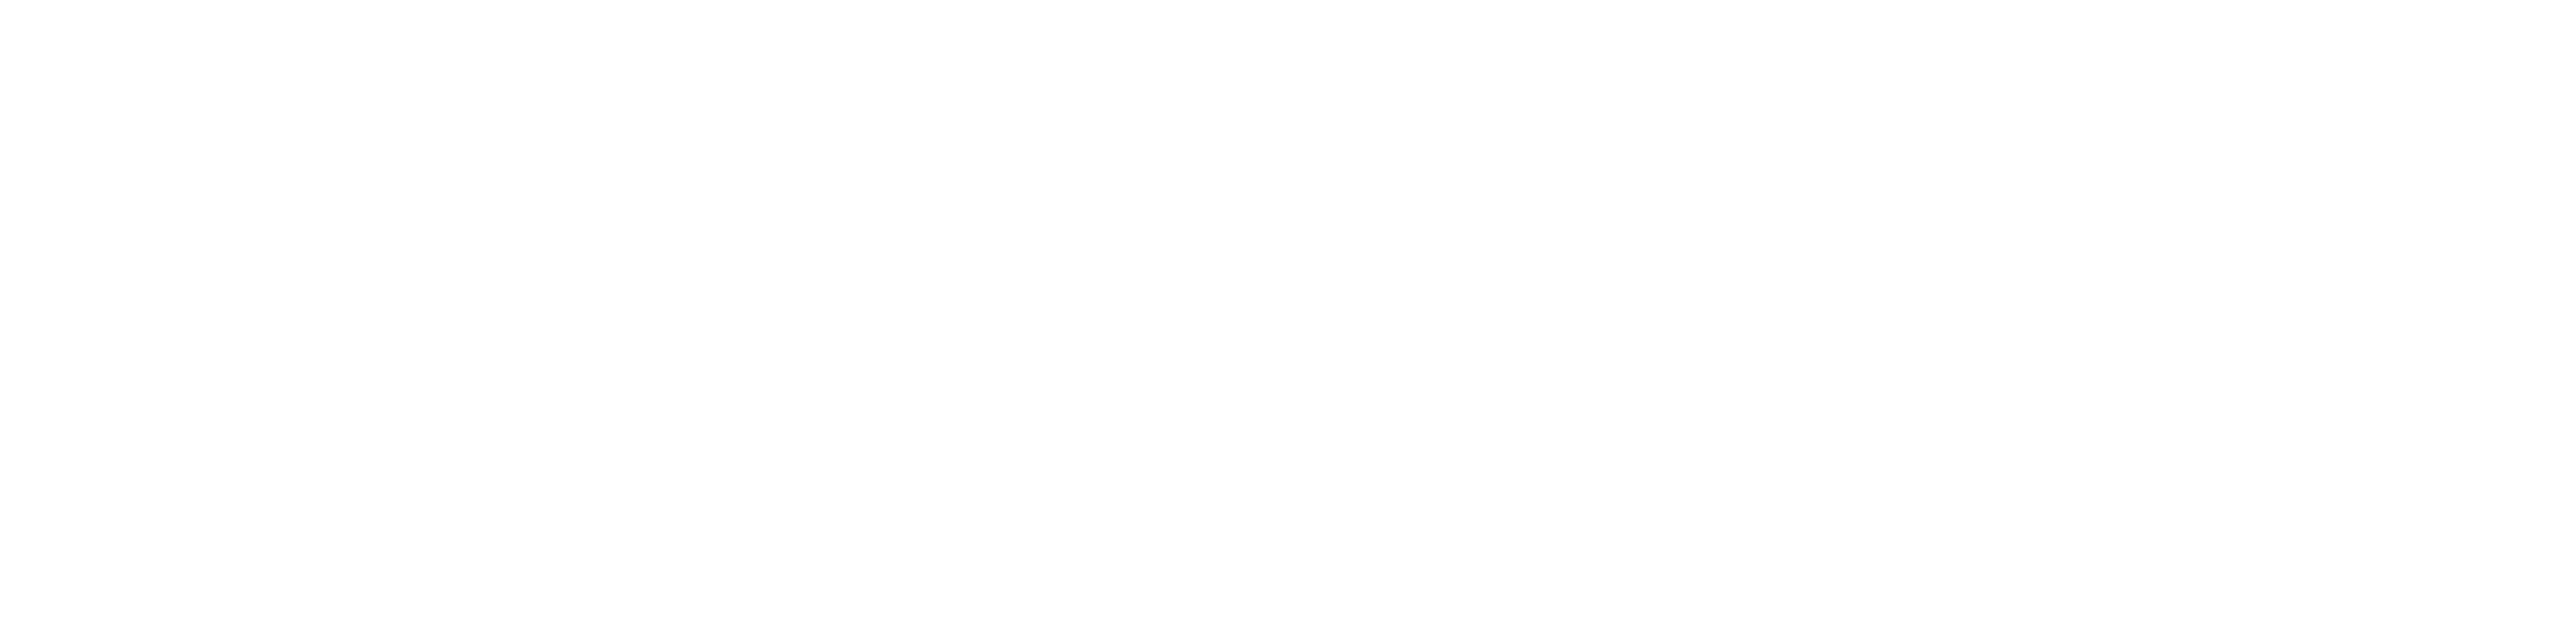 Asociación Universitaria de Profesorado de Didáctica de las Ciencias Sociales